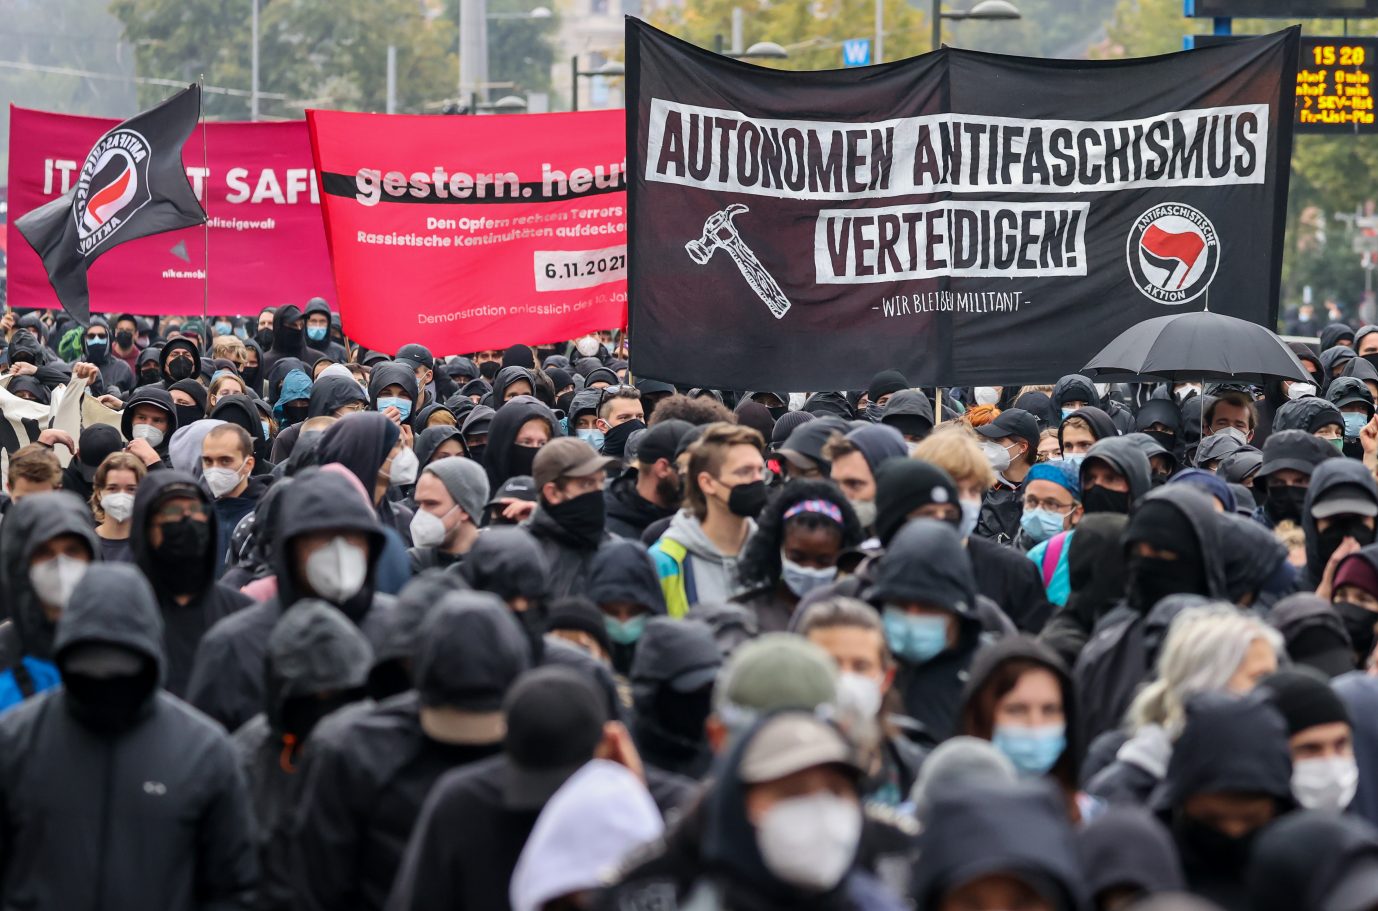 Antifa-Demonstration in Leipzig: Linke wollen "Antifaschismus" in die Verfassung schreiben Foto: picture alliance/dpa/dpa-Zentralbild | Jan Woitas